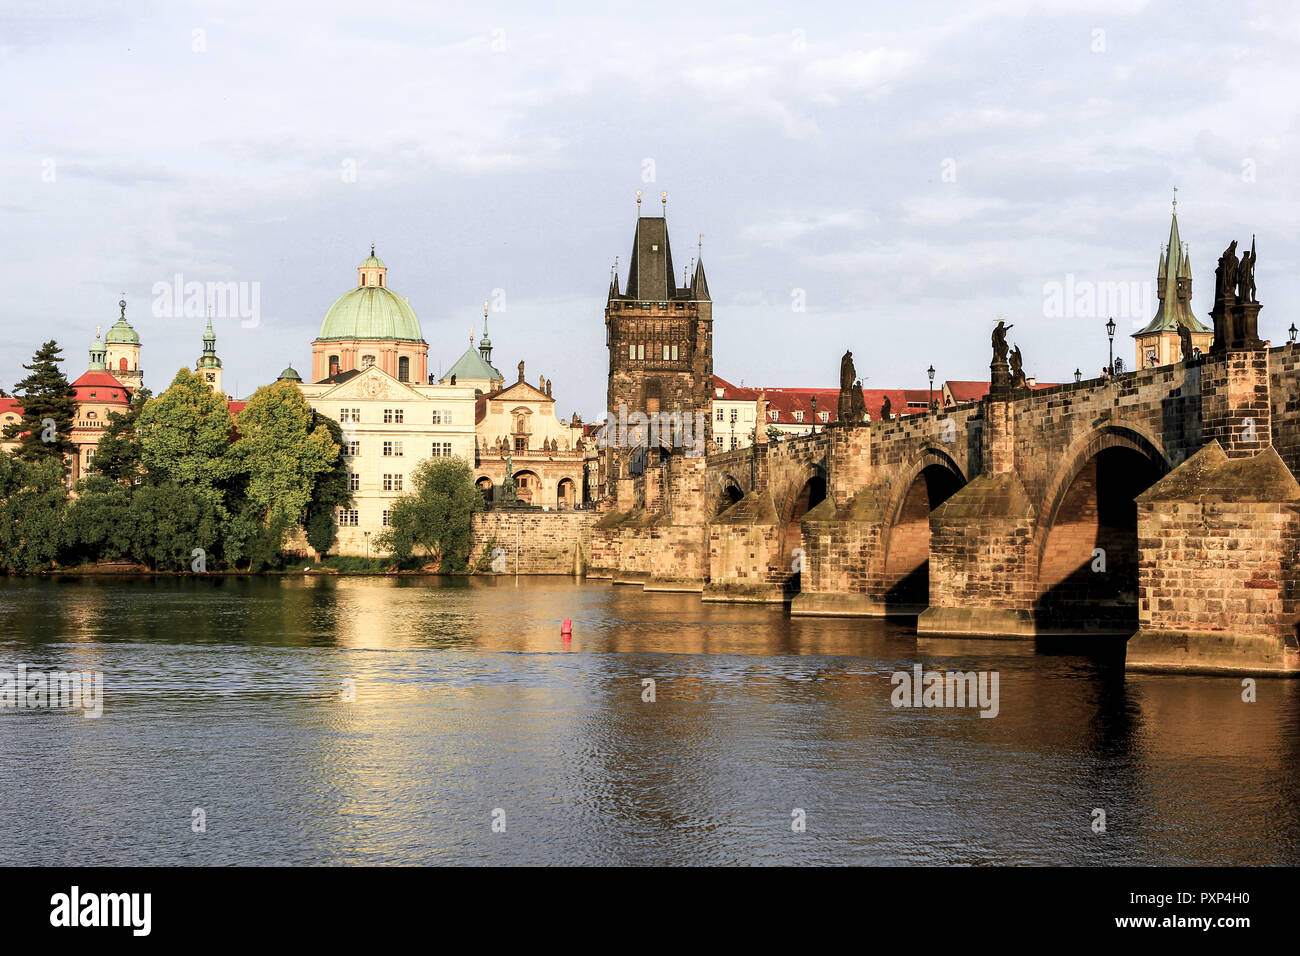 Tschechische Republik, Prag, Blick auf die Karlsbrücke an der Moldau, mit dem Altstädter Brückenturm, Czech Republic, Prague, view on the Charles Brid Stock Photo